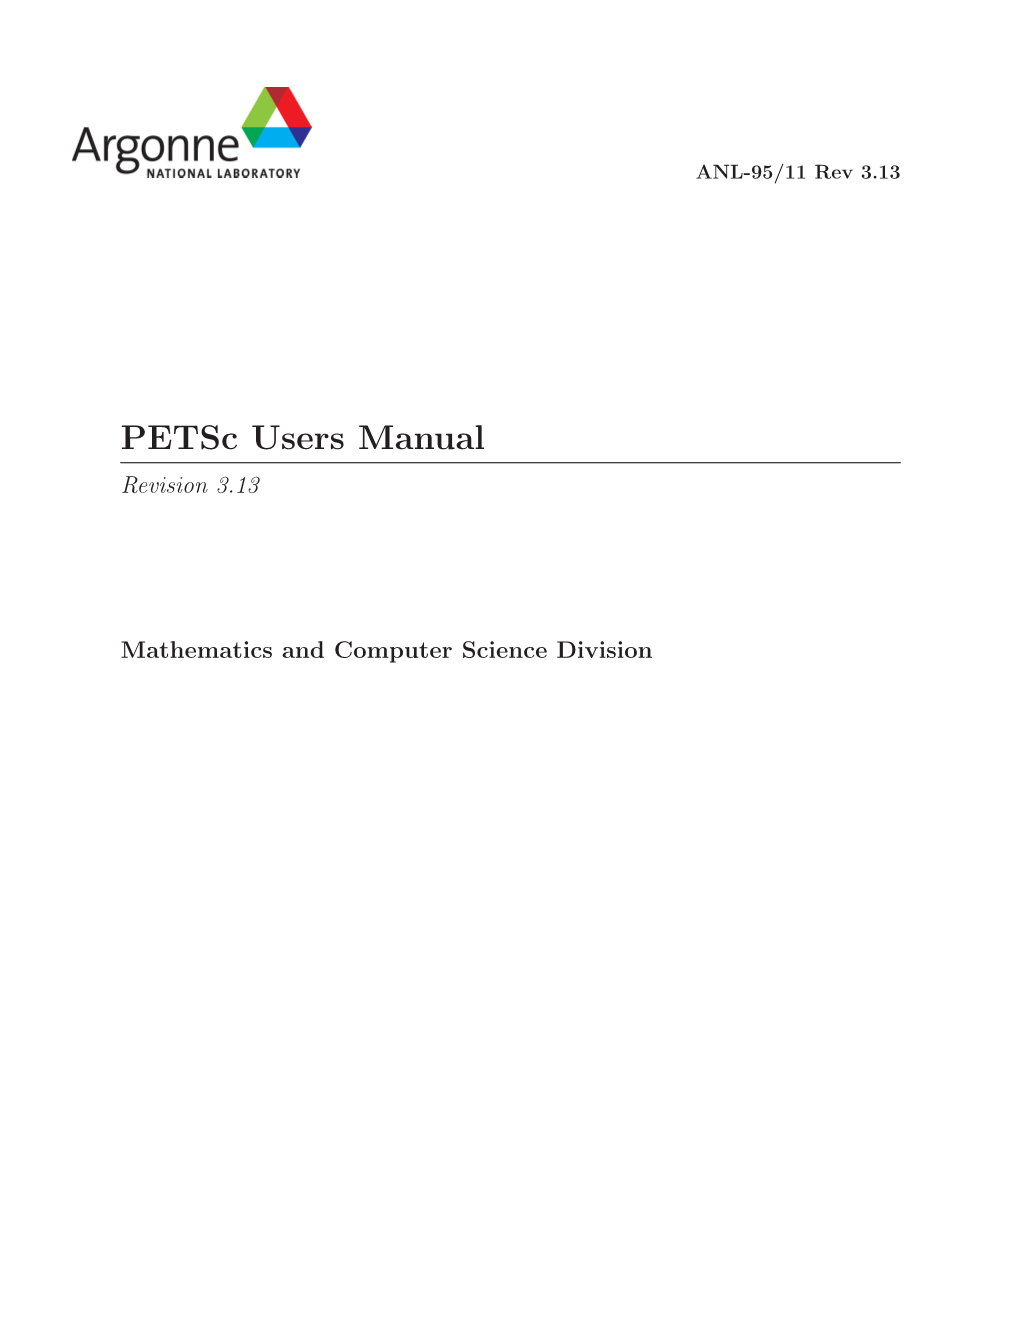 Petsc Users Manual Revision 3.13